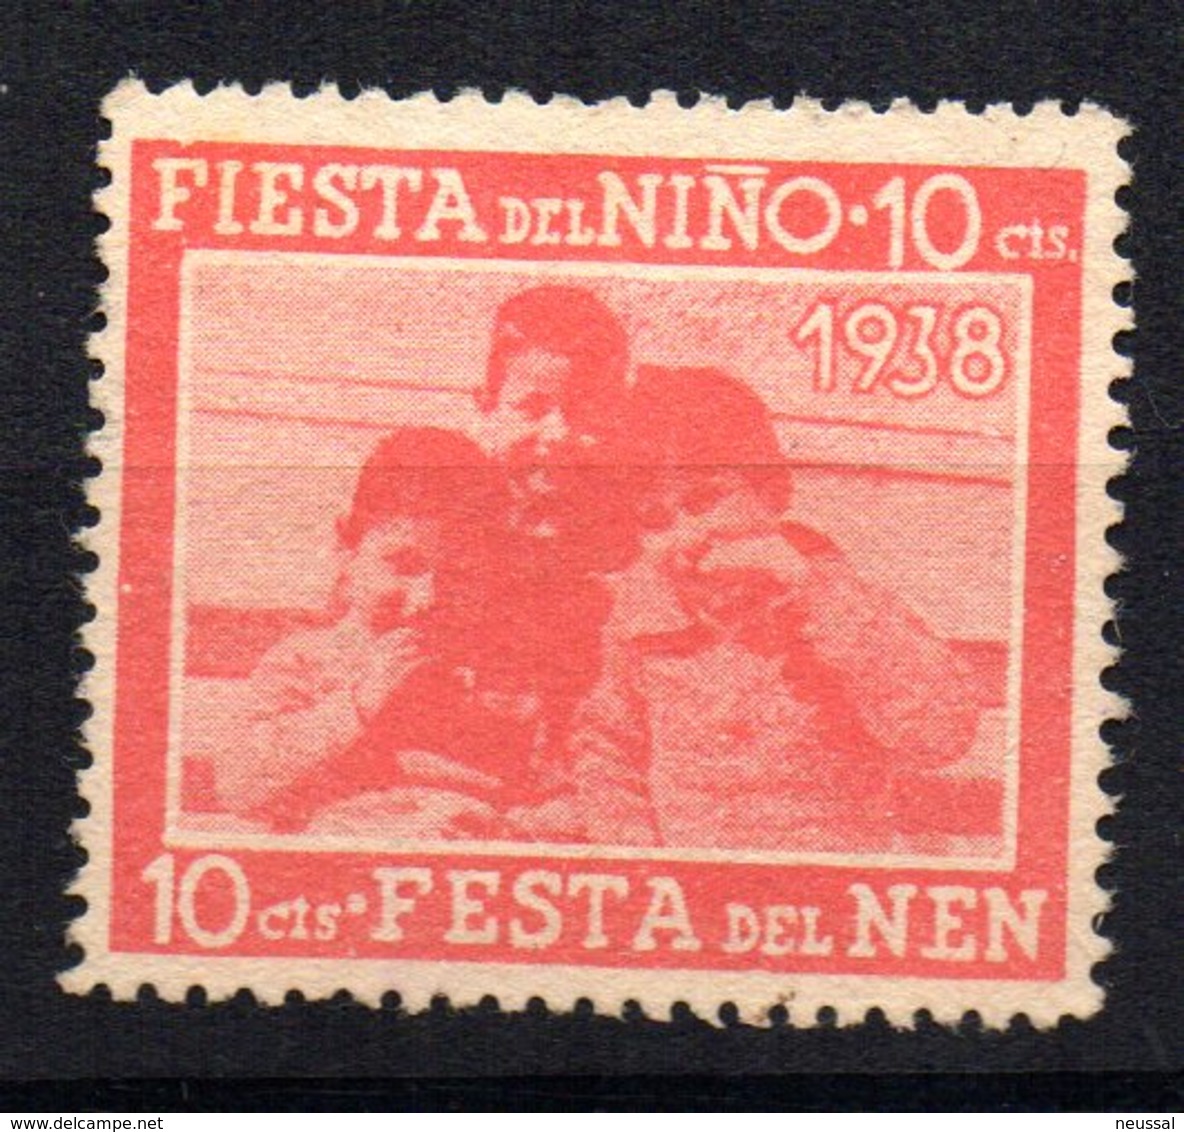 Viñeta Fiesta Del Niño 1938 - Viñetas De La Guerra Civil